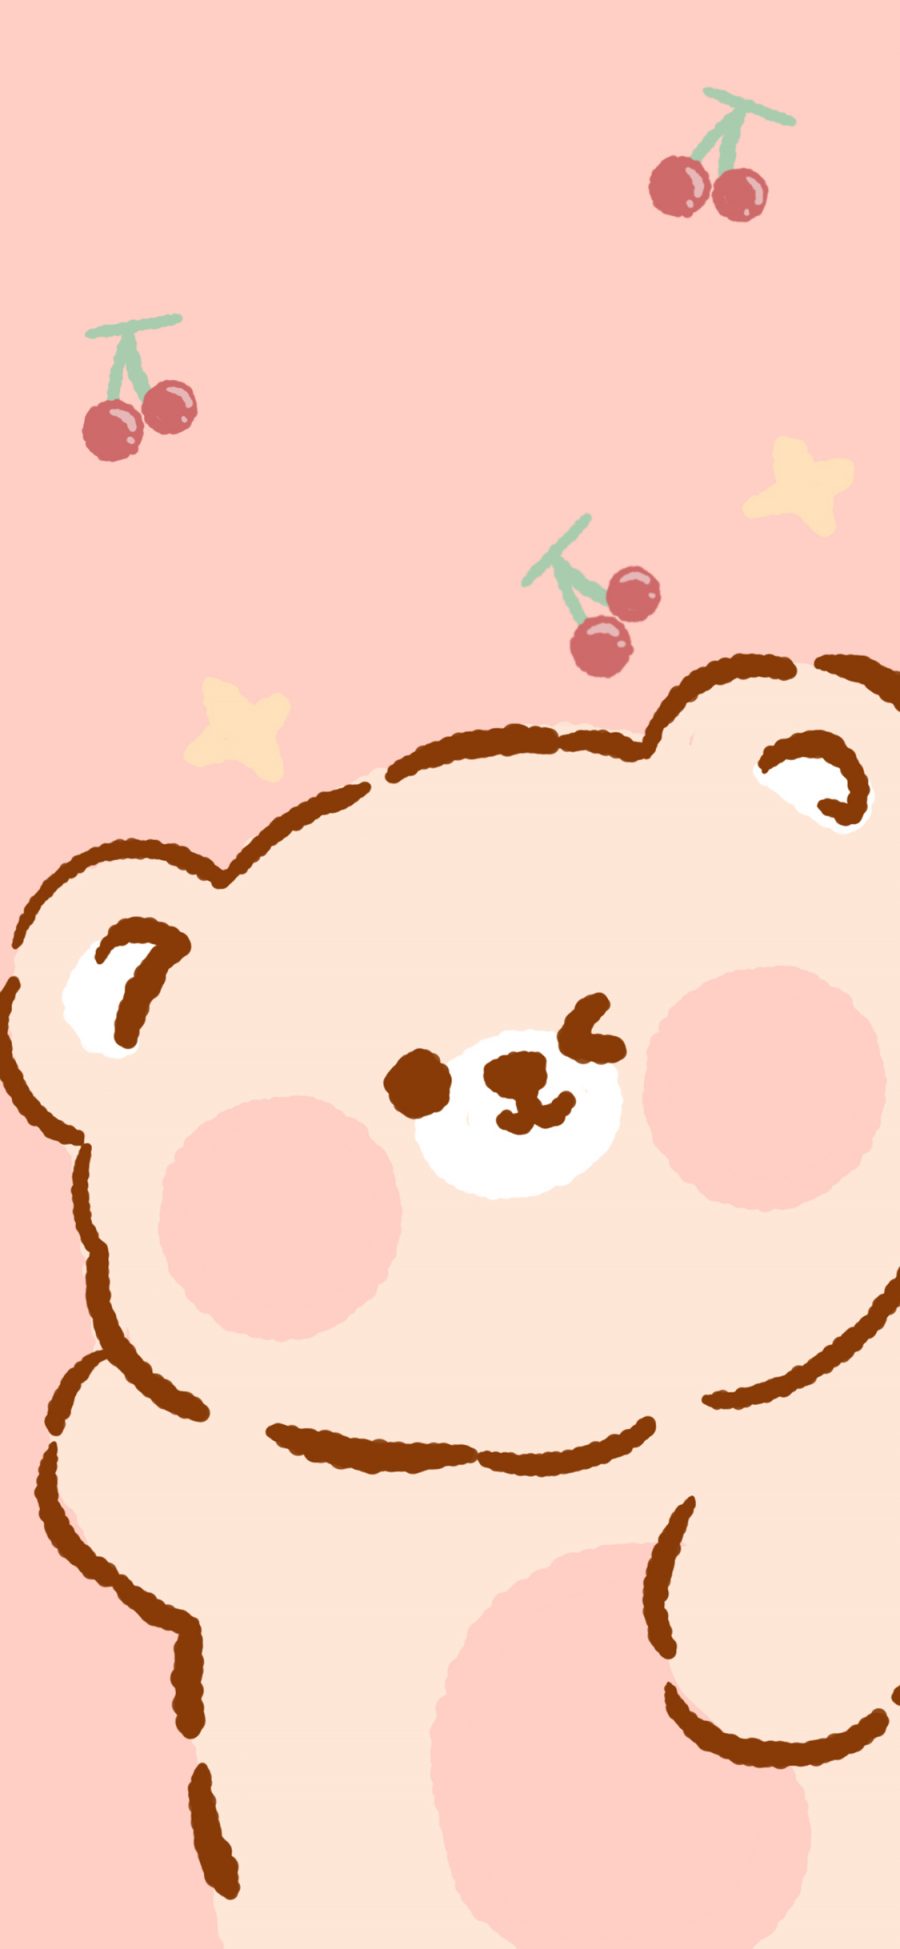 [2436×1125]小熊 樱桃 粉色 卡通 可爱 苹果手机动漫壁纸图片